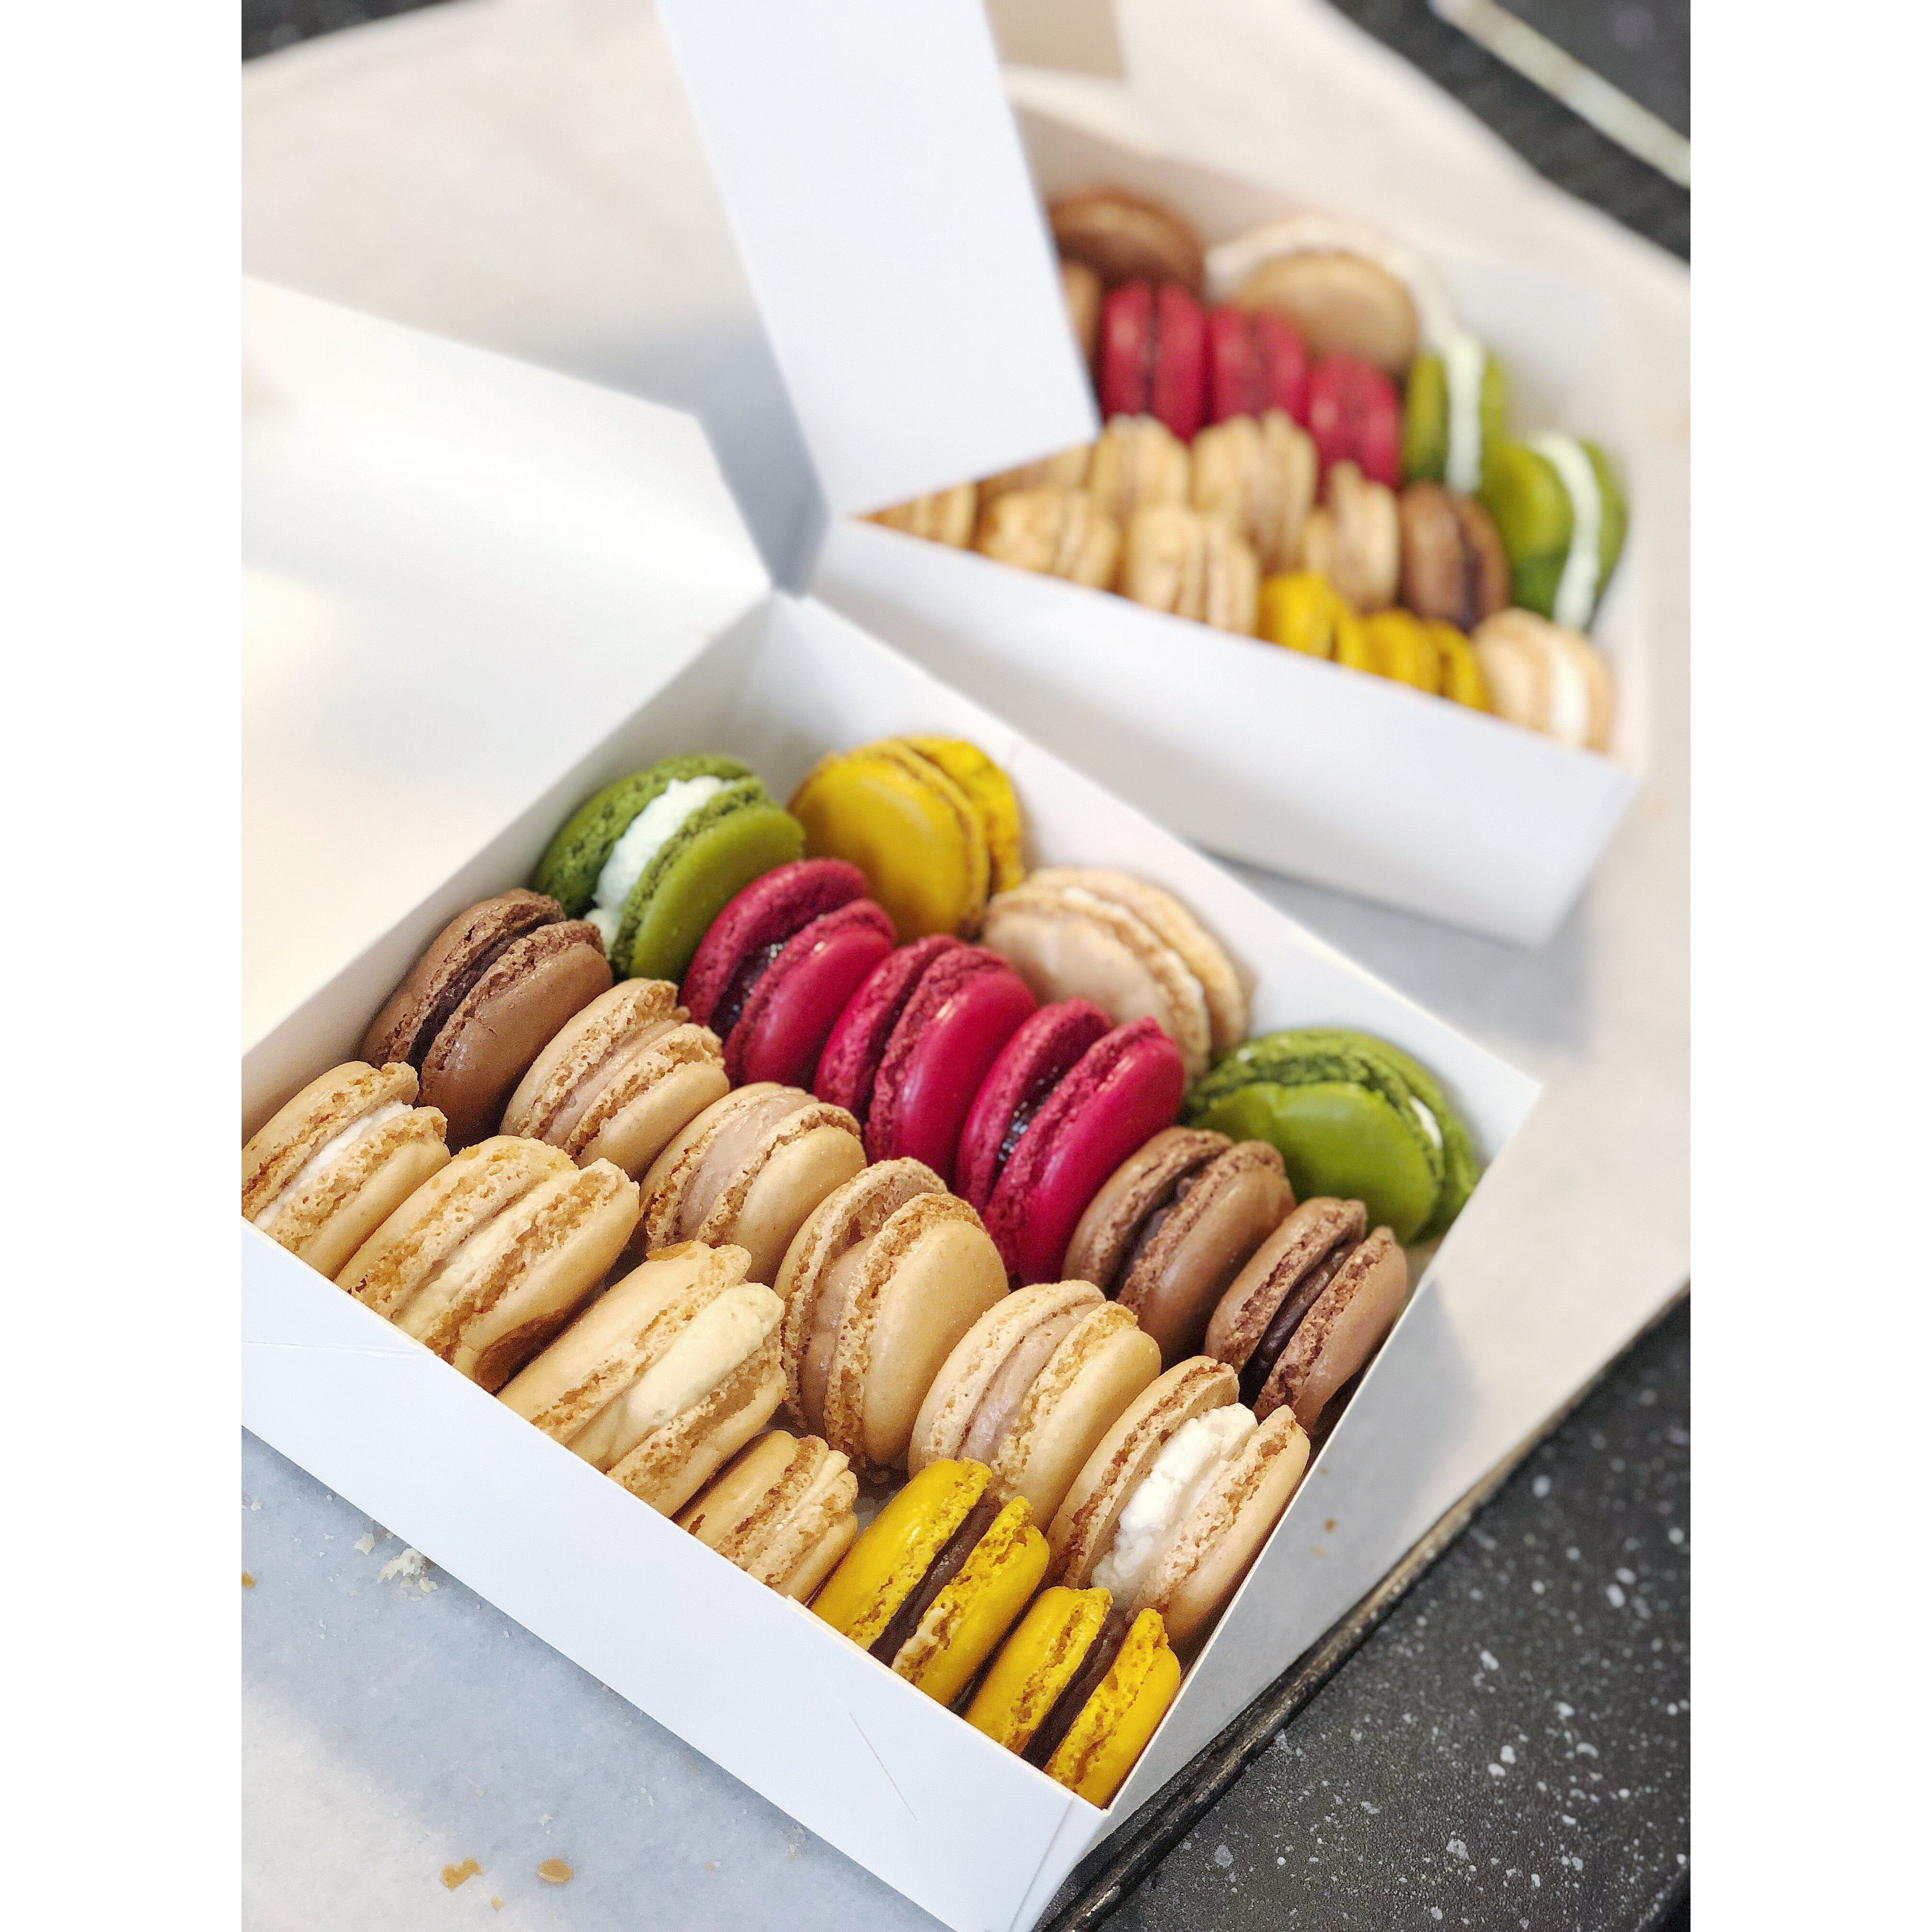 Bon Cadeau 12-16 ans 40€ (Macarons, pâte à choux, cupcakes) - L'Atelier des Gâteaux